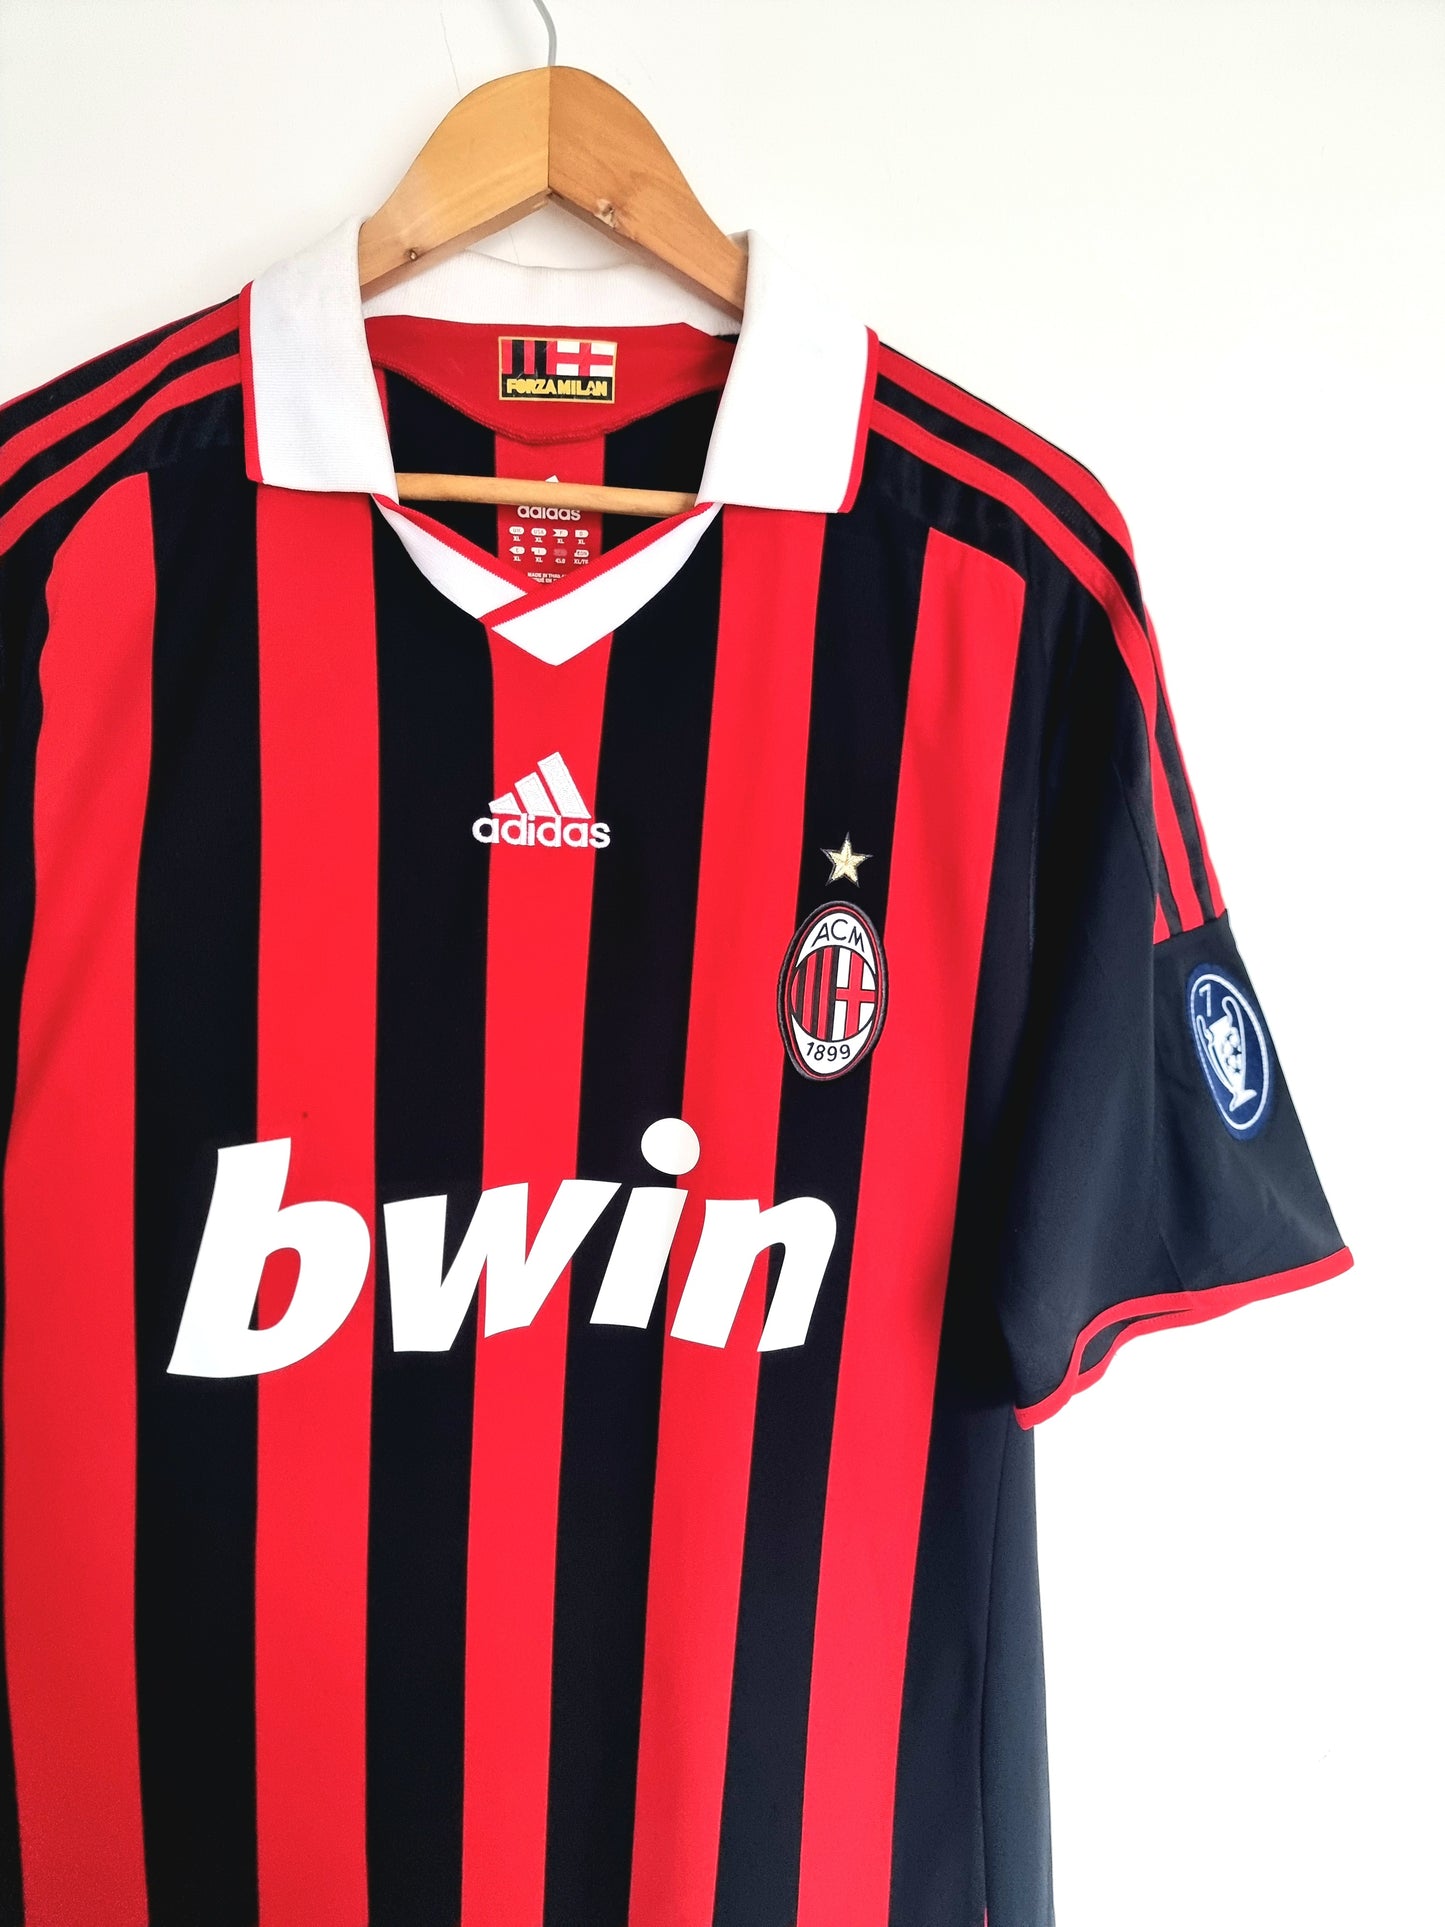 Adidas AC Milan 09/10 'Borriello 22' Signed Home Shirt XL